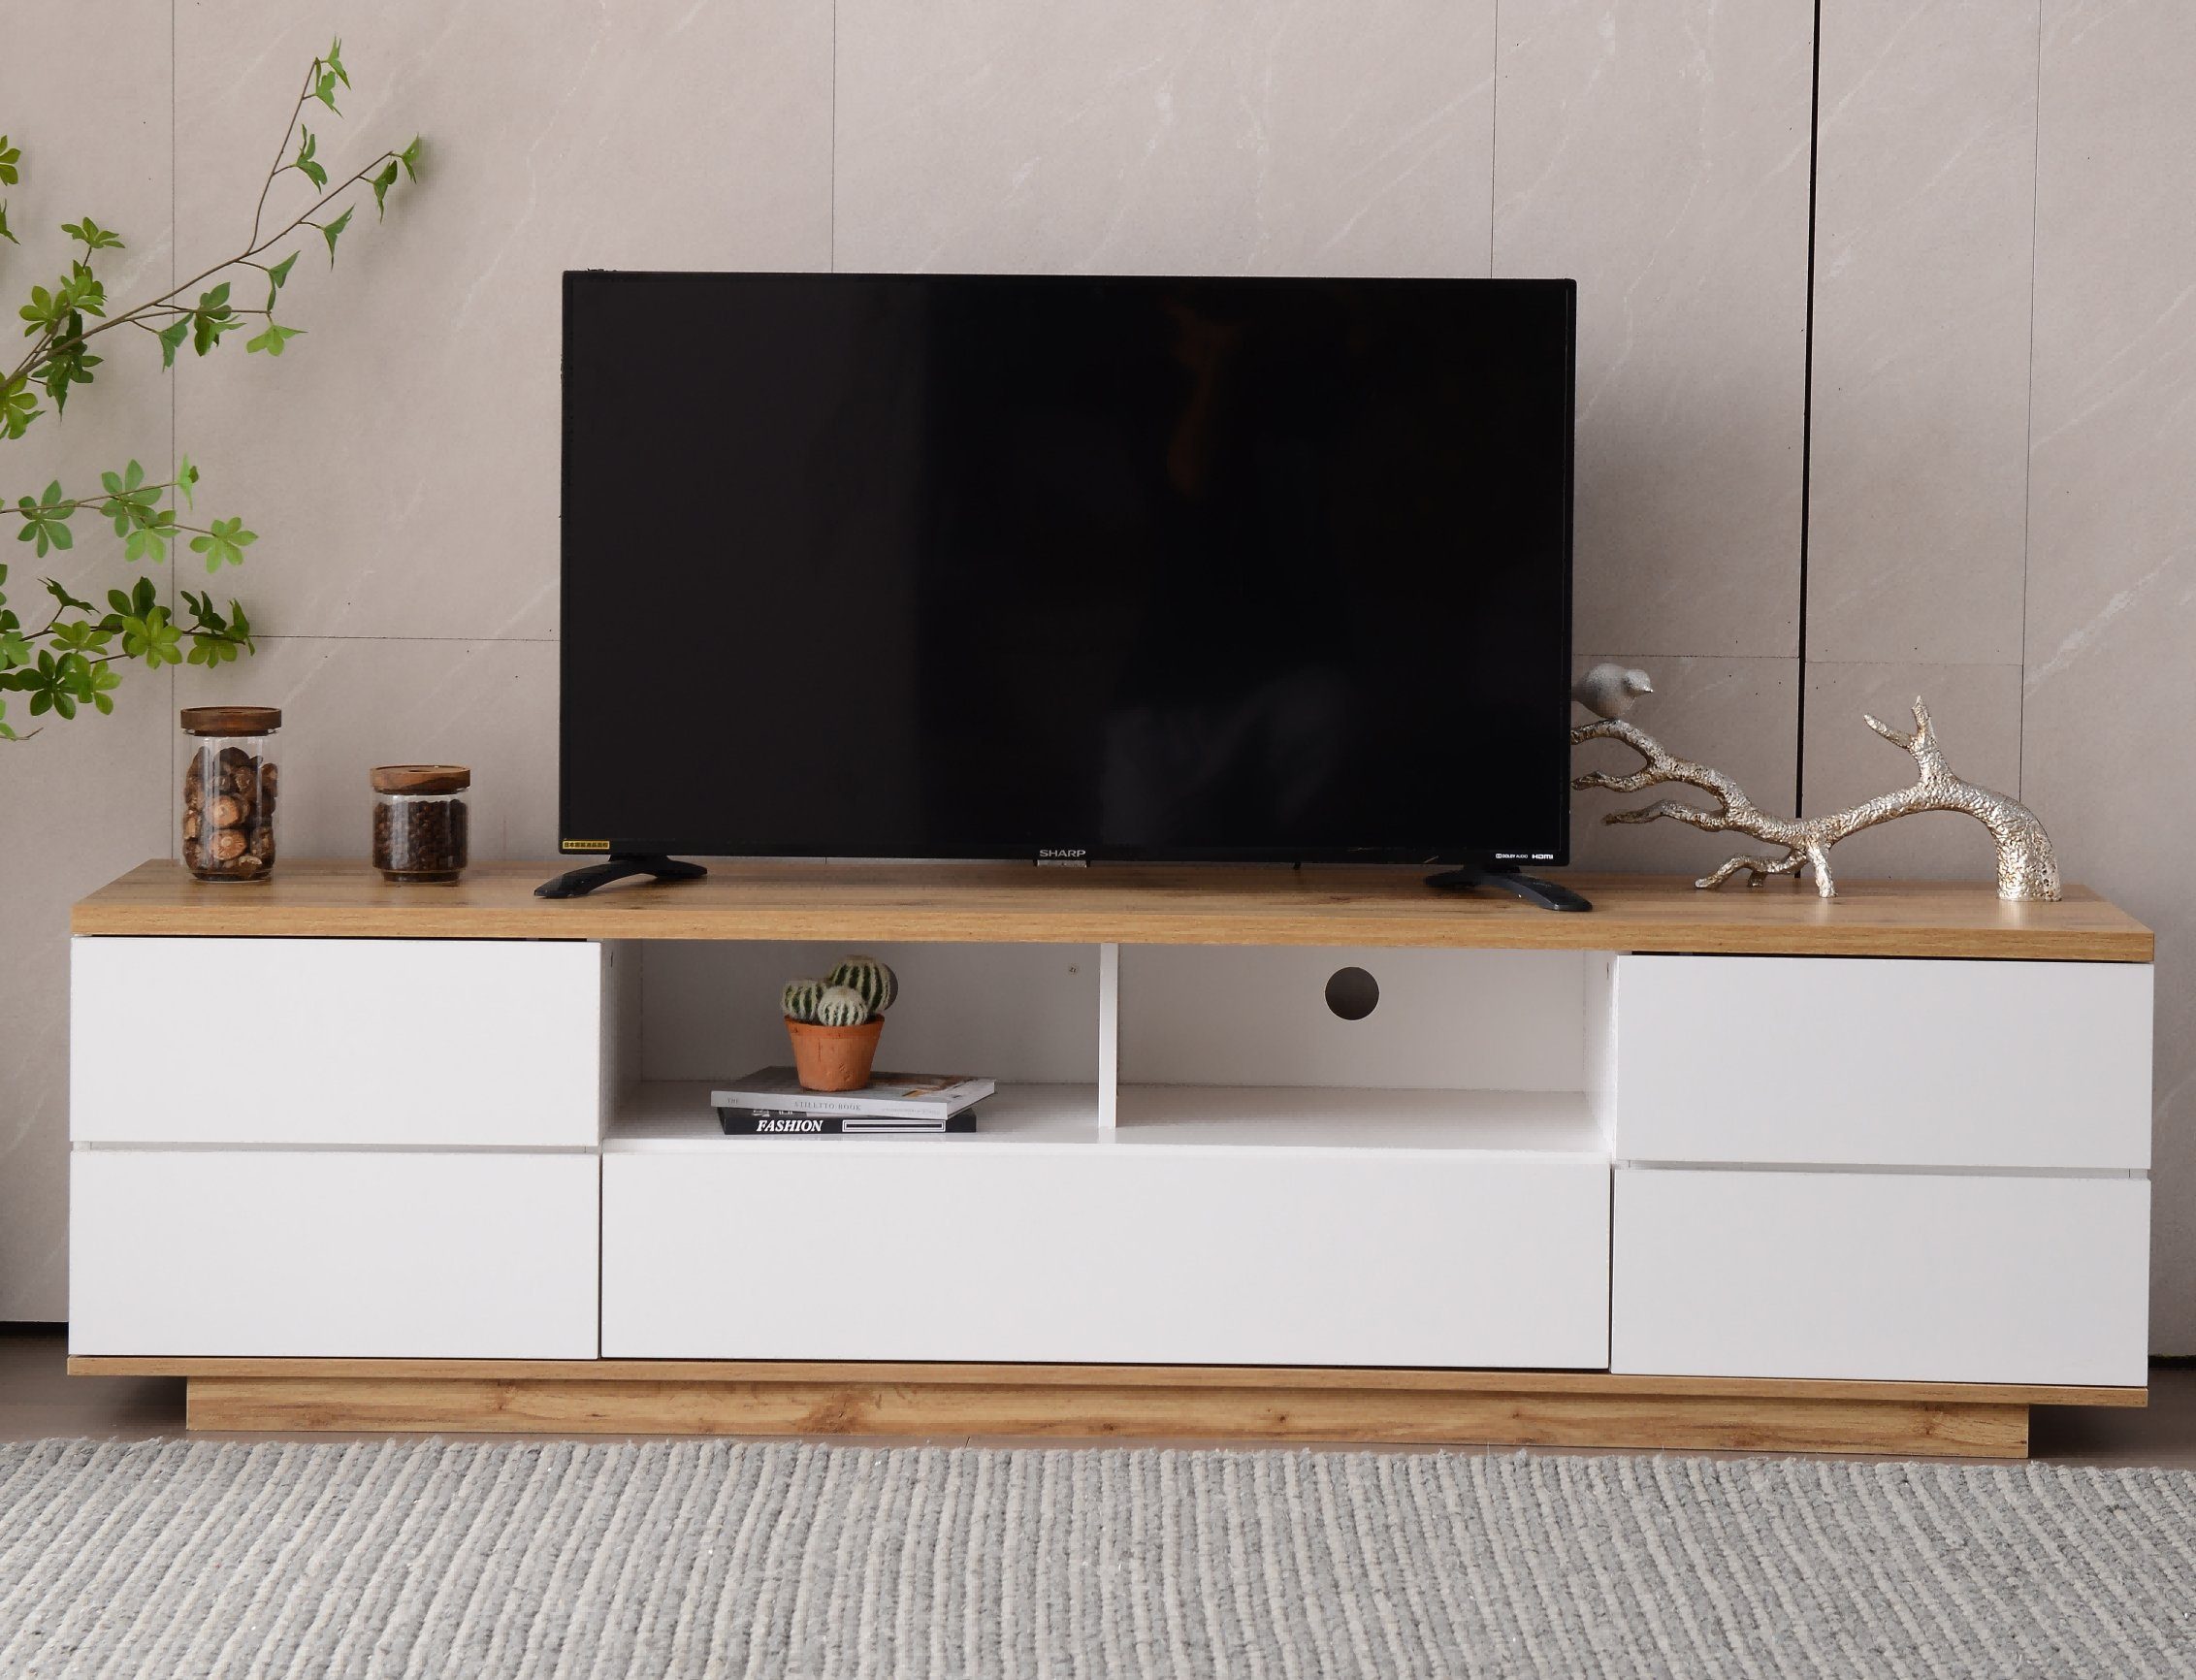 Fangqi TV-Schrank Colorblocking-TV-Schrank mit Moderner Holzfarbe TV-Schrank 180cm Holzmaserung Hochglanz-Oberfläche